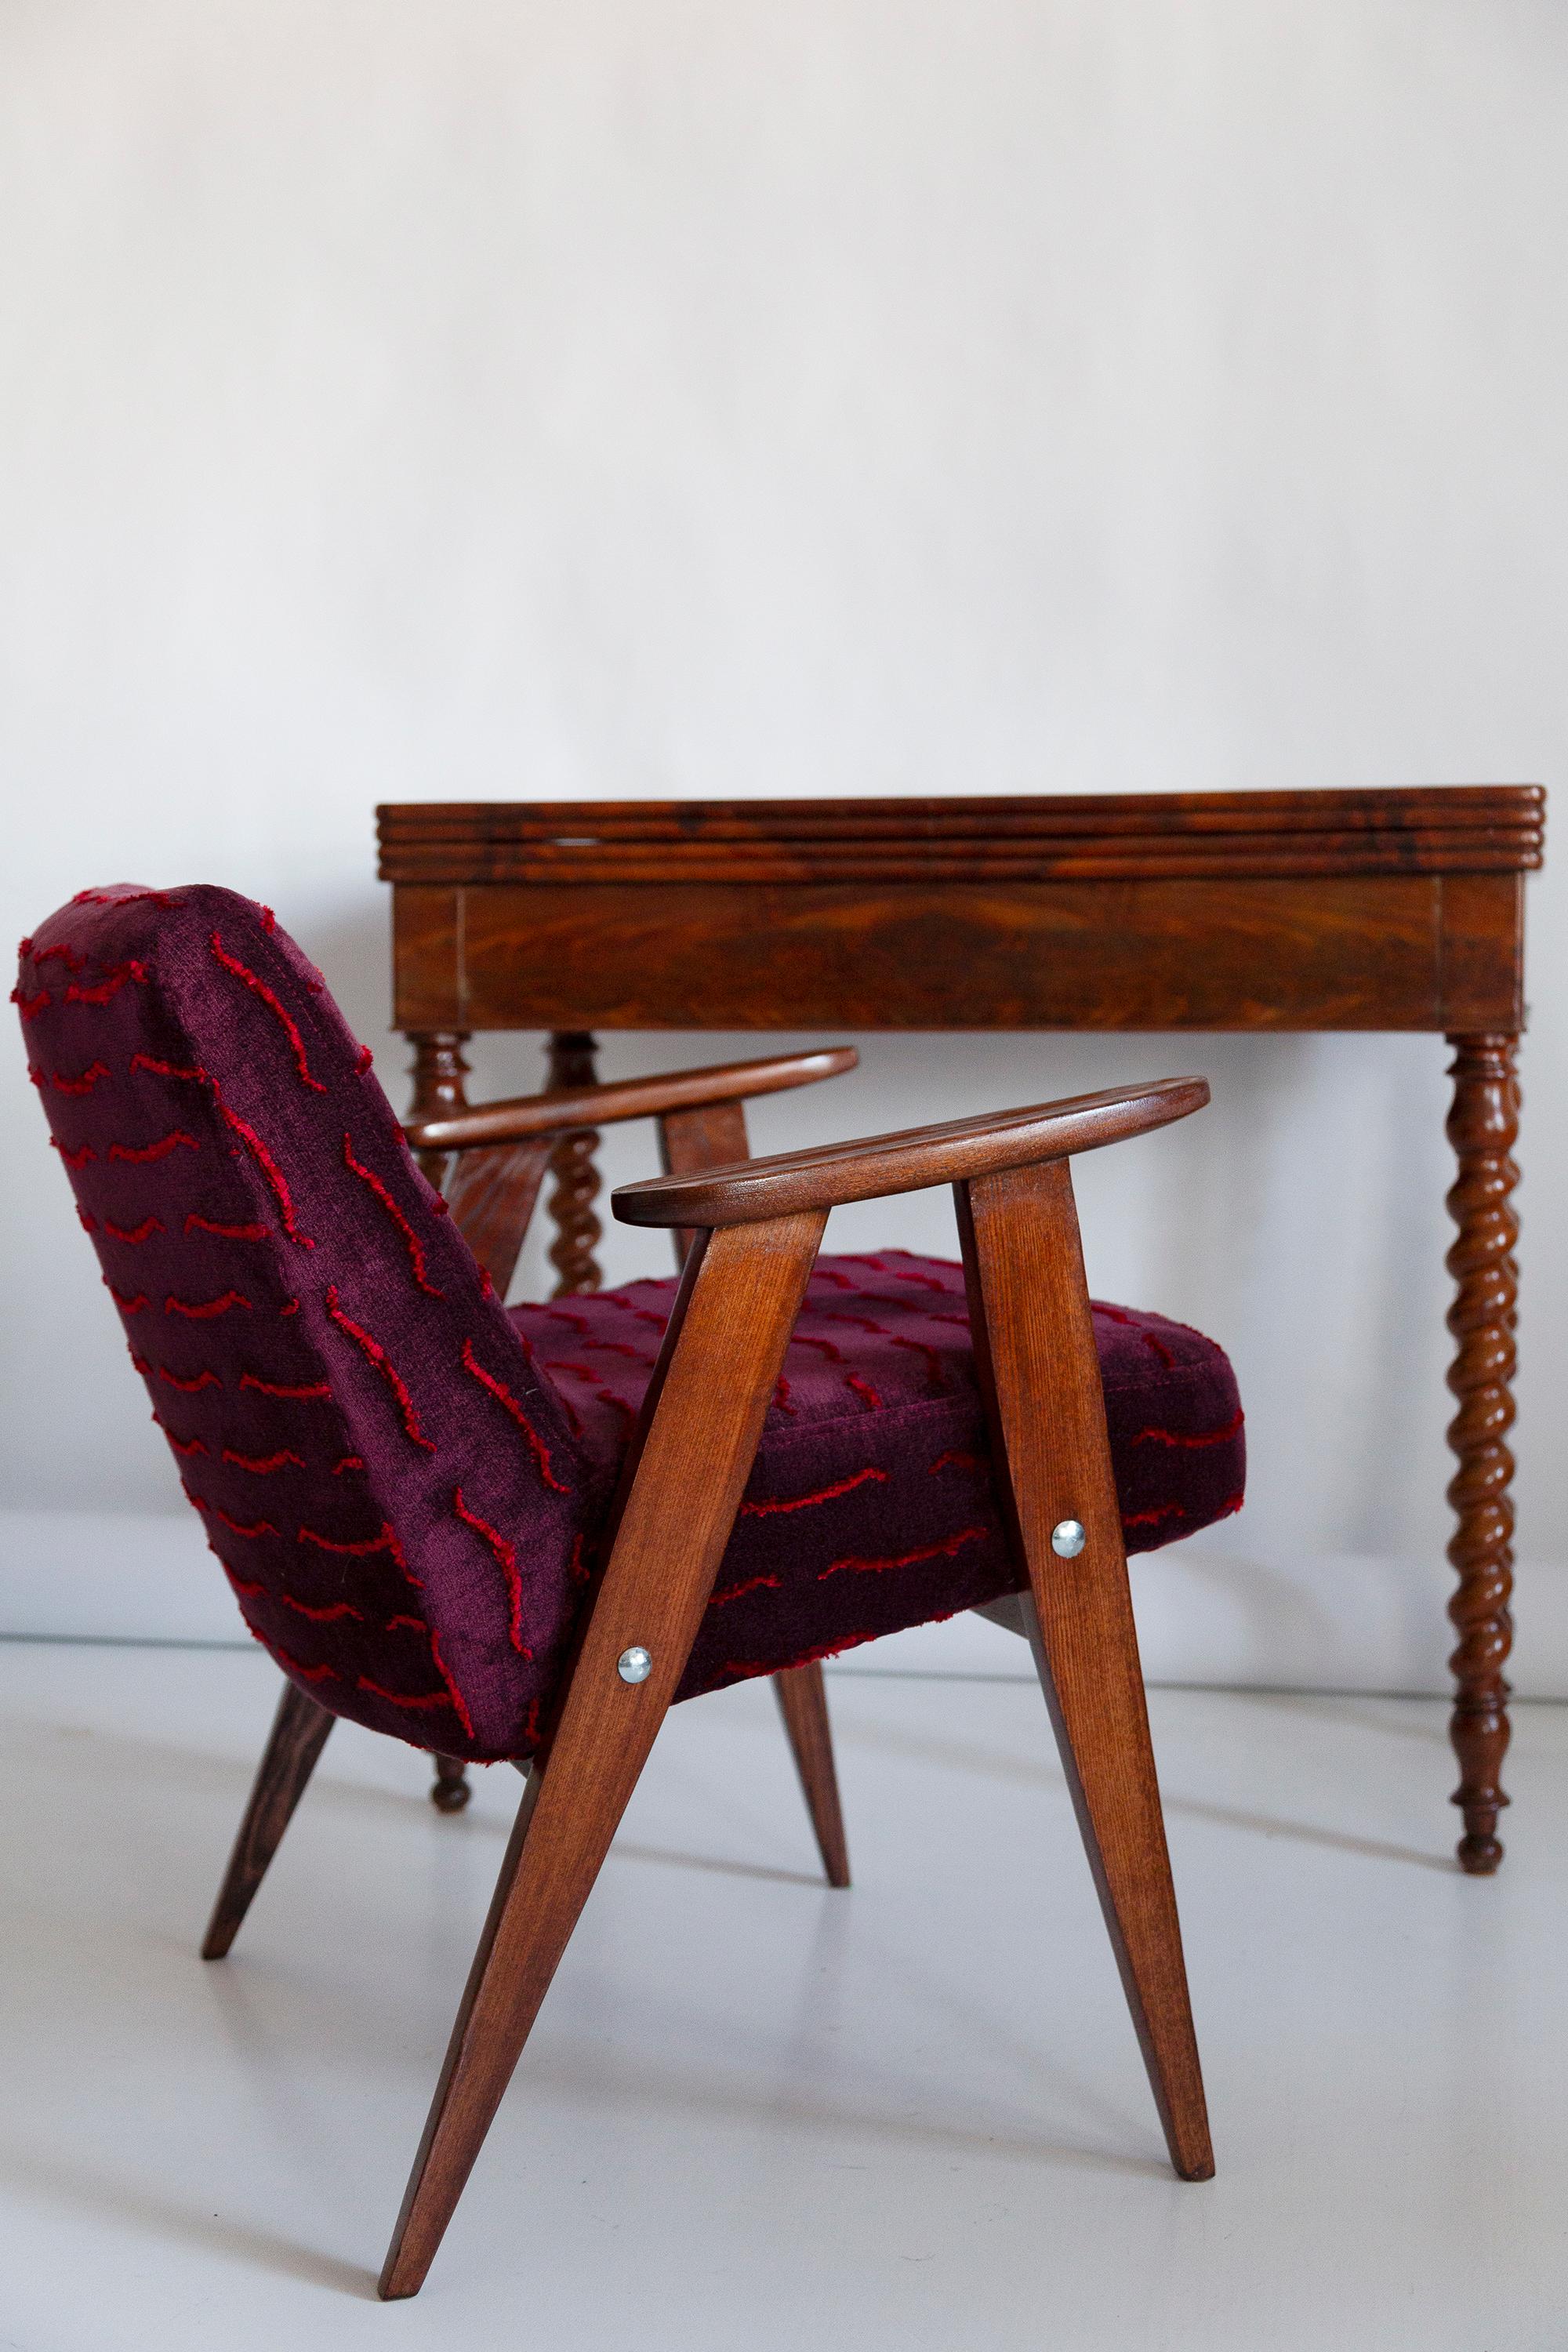 Der Sessel 366 ist eine Ikone des polnischen Designs aus der PRL-Zeit.

Der berühmte Sessel wurde 1962 von dem polnischen Innenarchitekten und Möbeldesigner Jozef Marian Chierowski entworfen. Produziert in der Niederschlesischen Möbelfabrik in